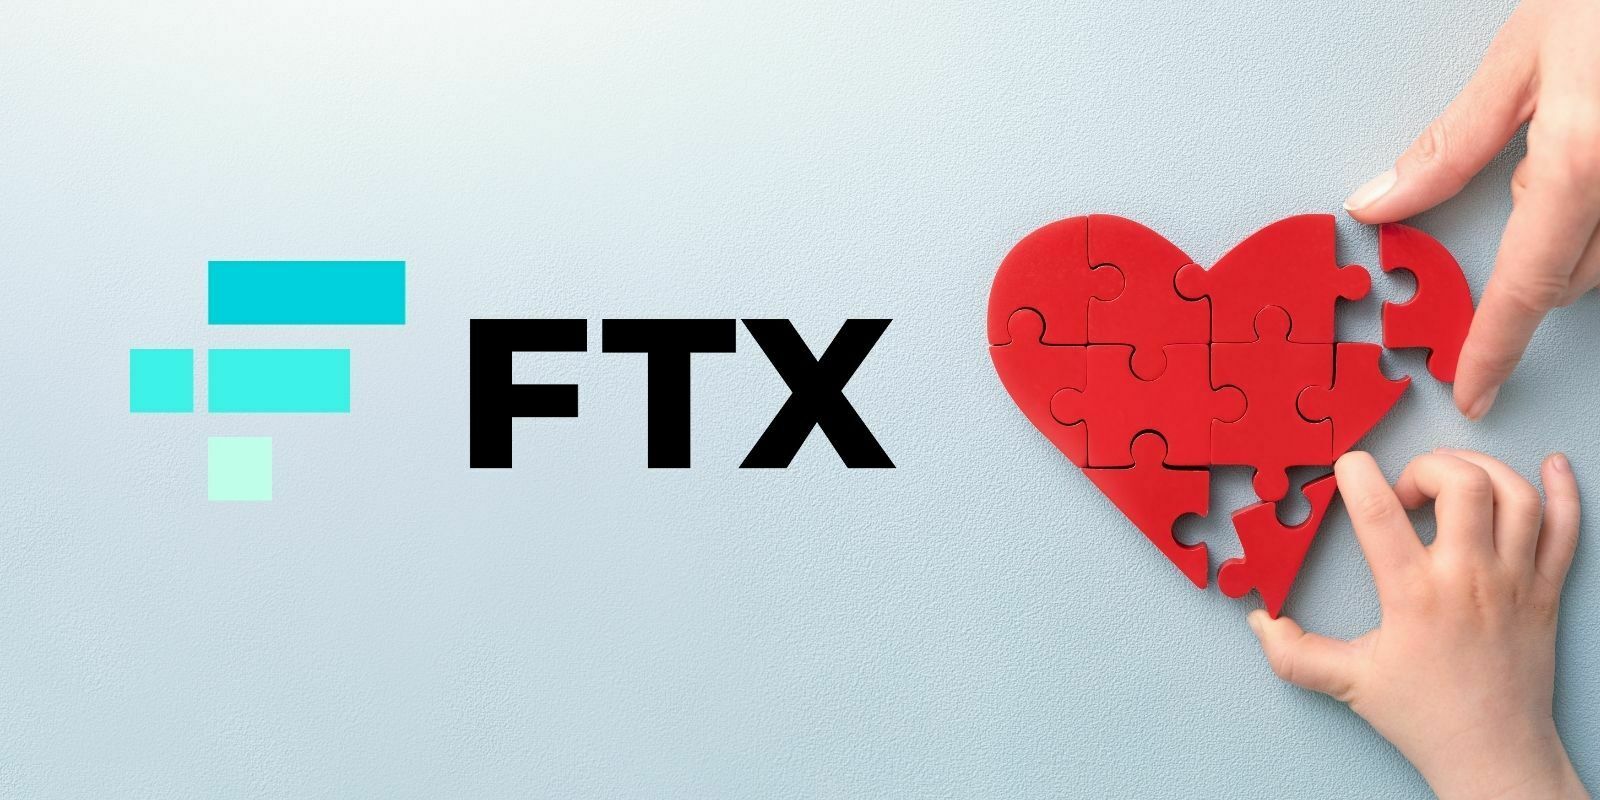 L’exchange FTX va donner 1% de ses bénéfices à des œuvres caritatives